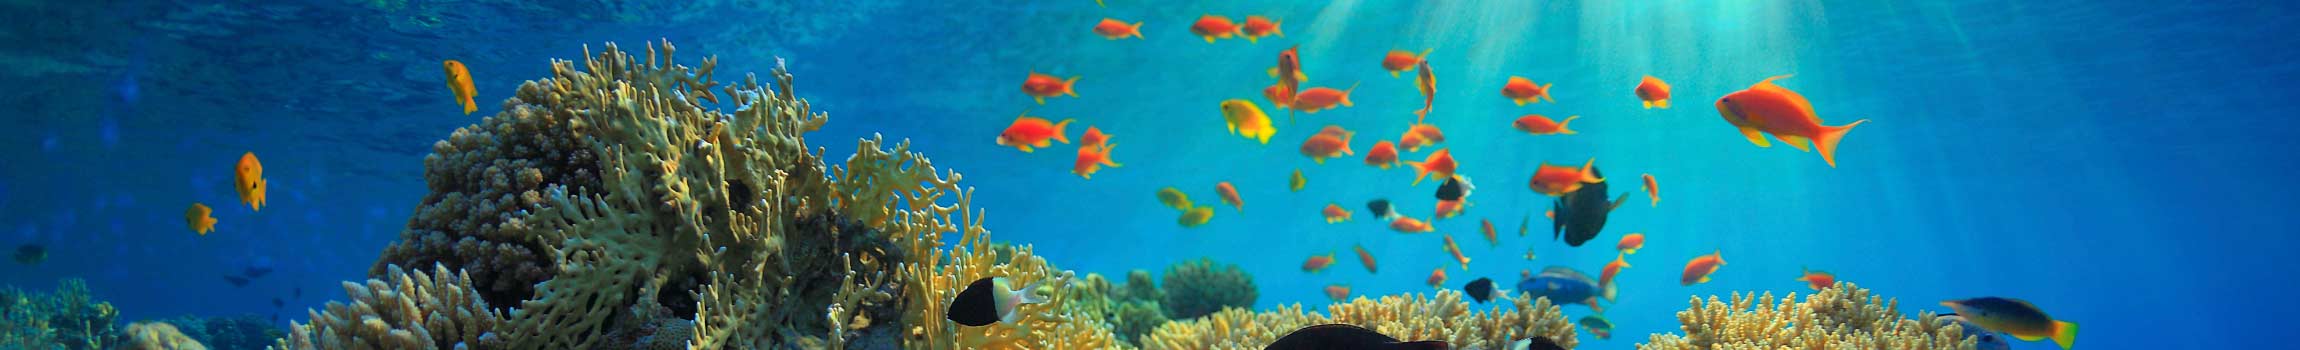 Bunte Fische an einem Korallenriff im Roten Meer in Ägypten